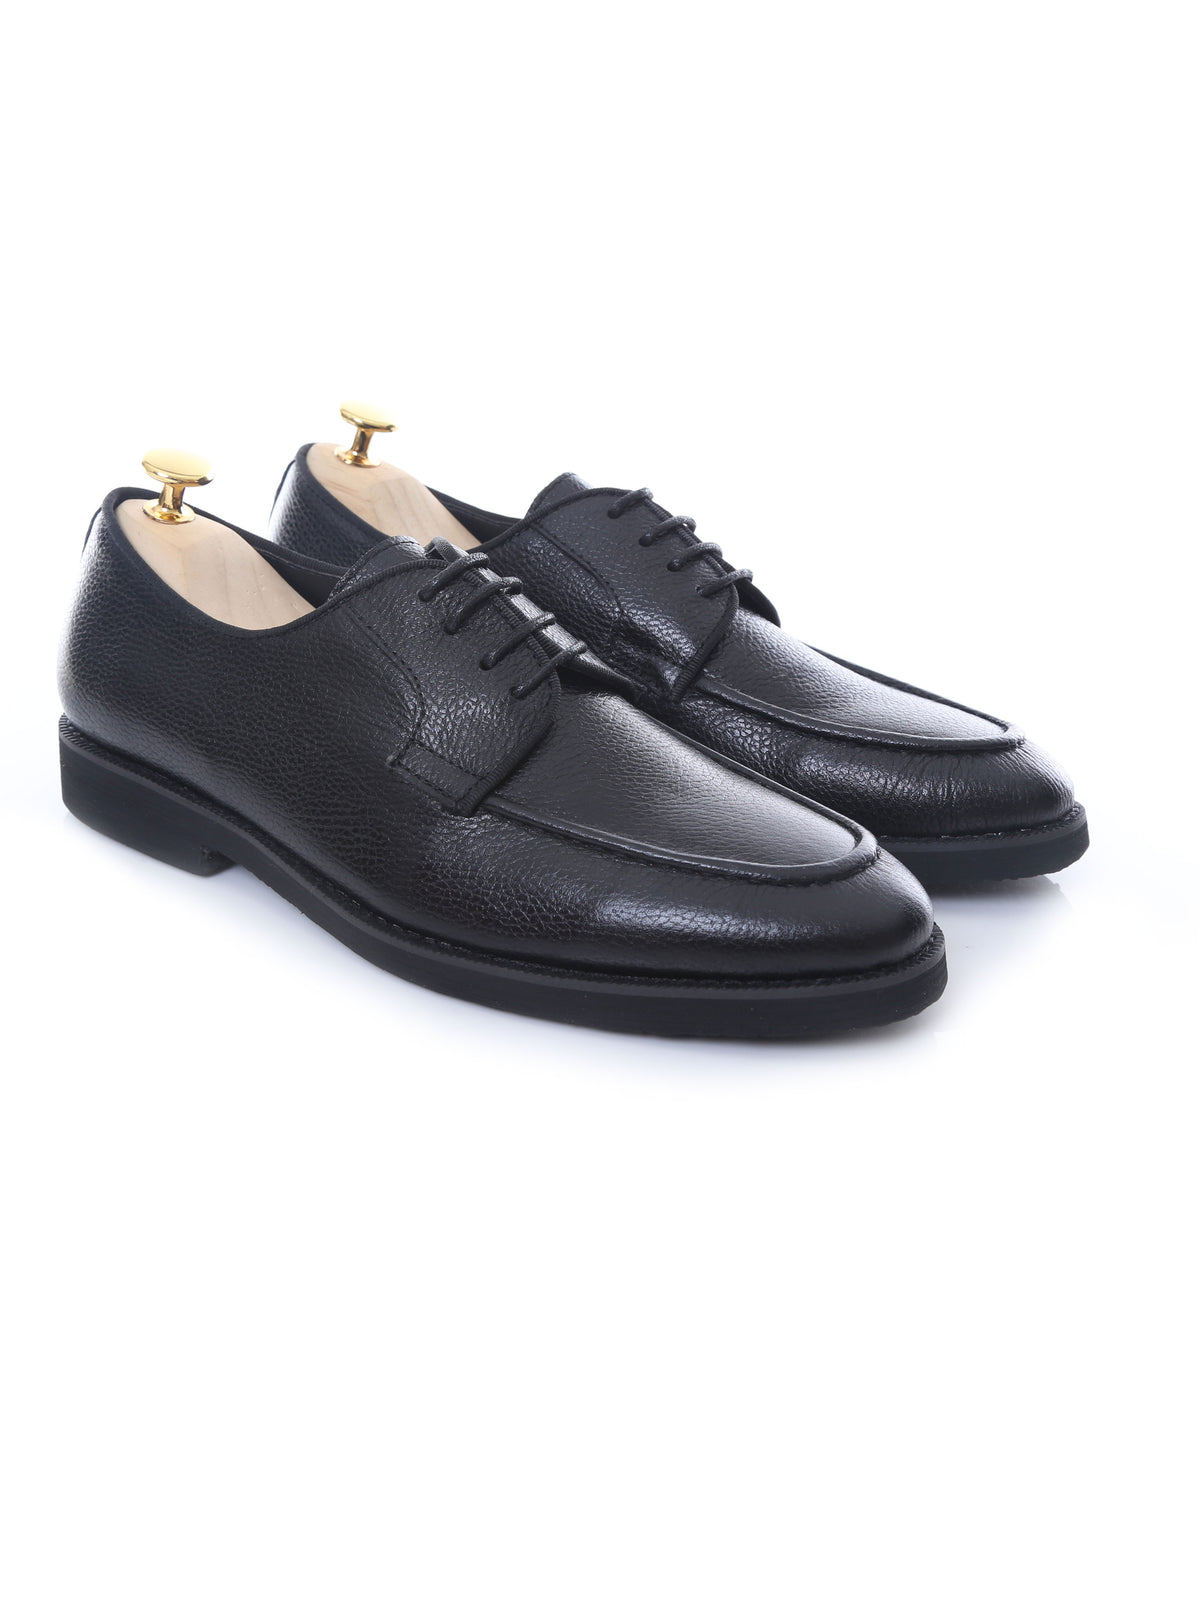 Blucher Lace Up - Black Pebble Grain Leather (Crepe Sole) | Zeve Shoes